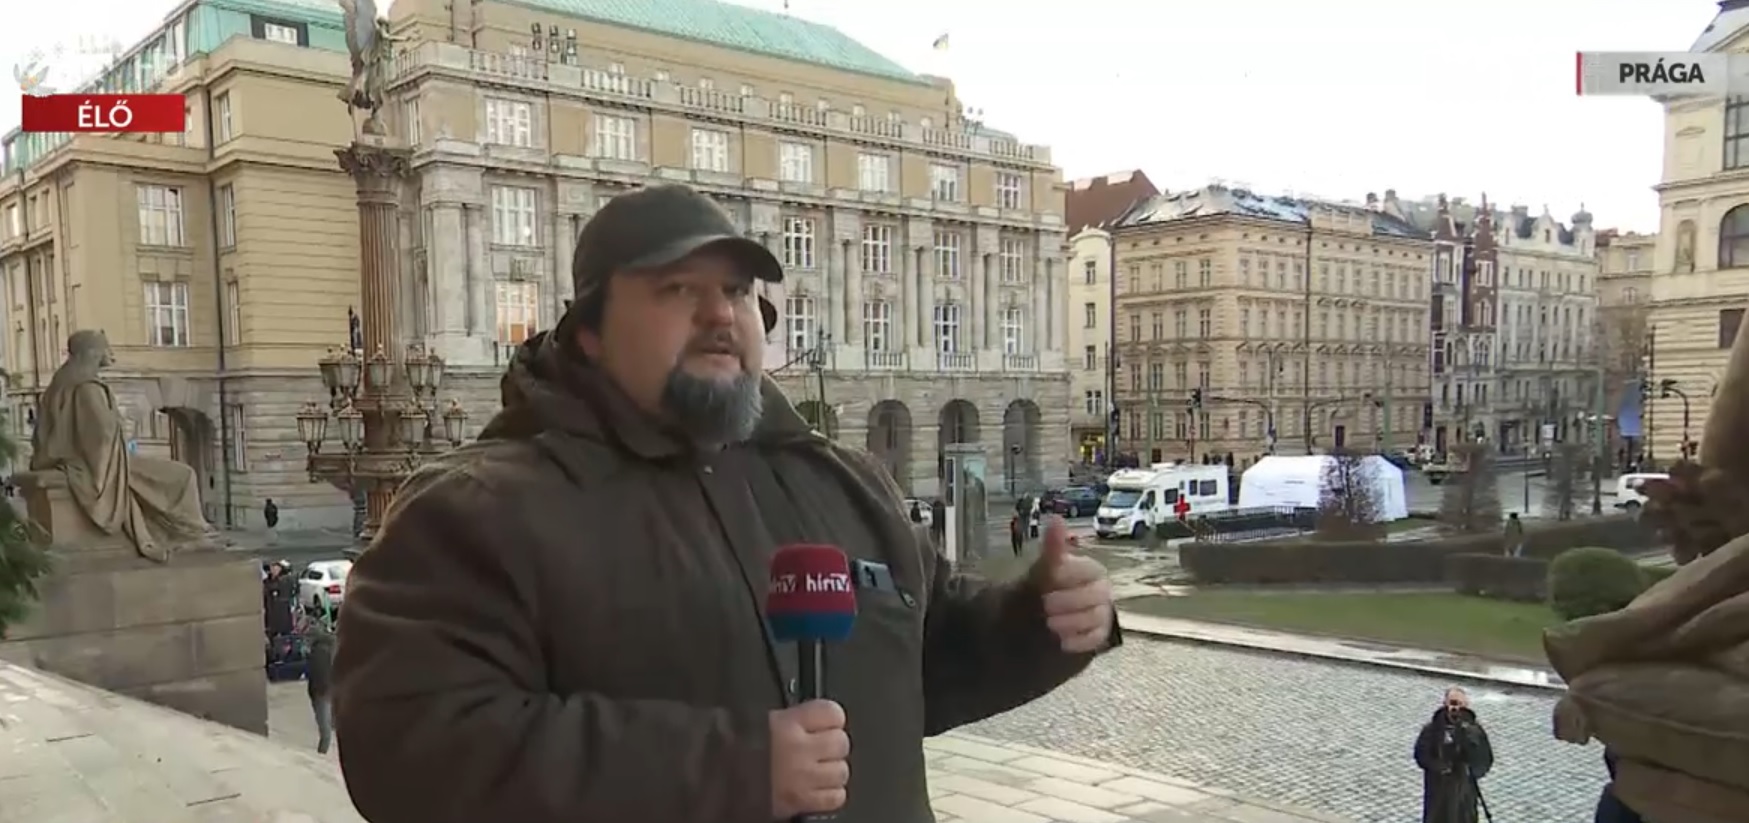 Rossz helyen várták a rendőrök a prágai elkövetőt + videó